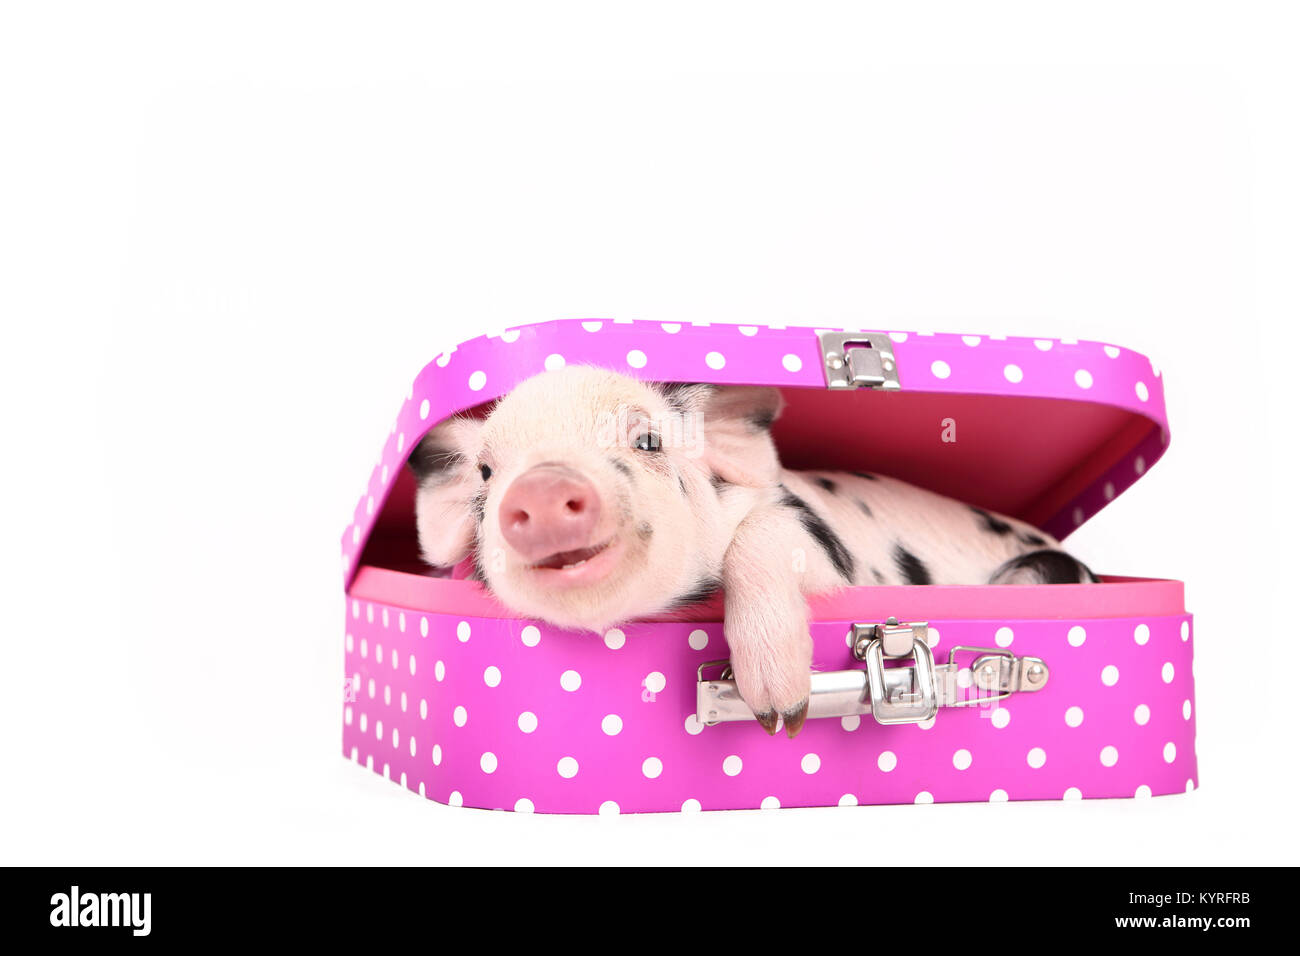 Suini domestici, Turopolje x ?. Maialino (3 settimane di età) giacente in una valigia rosa con pois. Studio Immagine visto contro uno sfondo bianco. Germania Foto Stock